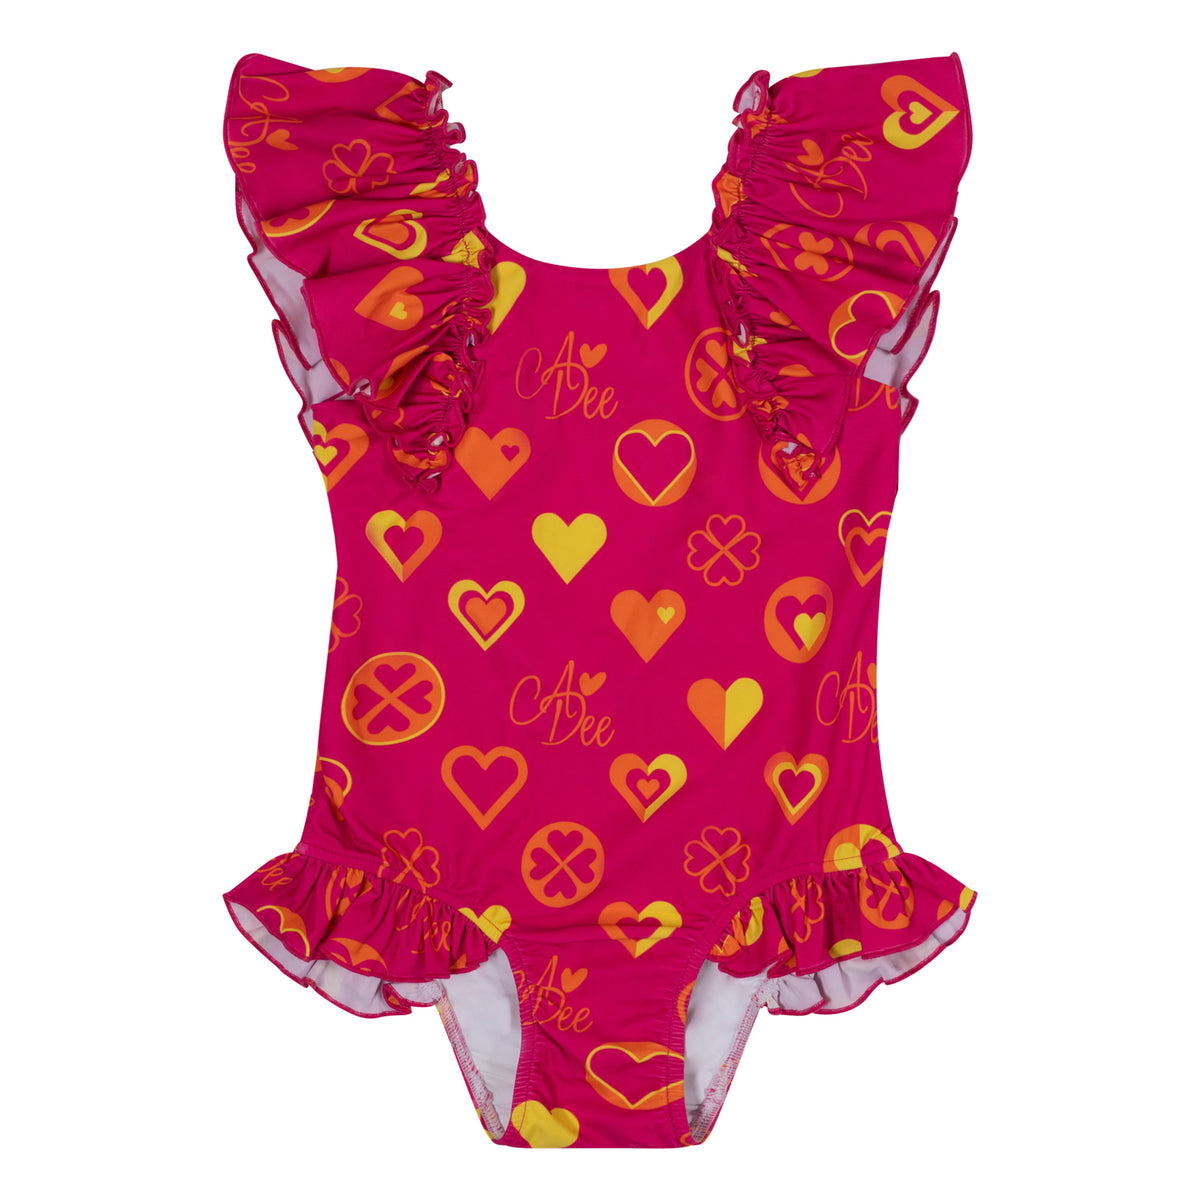 A Dee Girls 'Dori' Heart Swimsuit